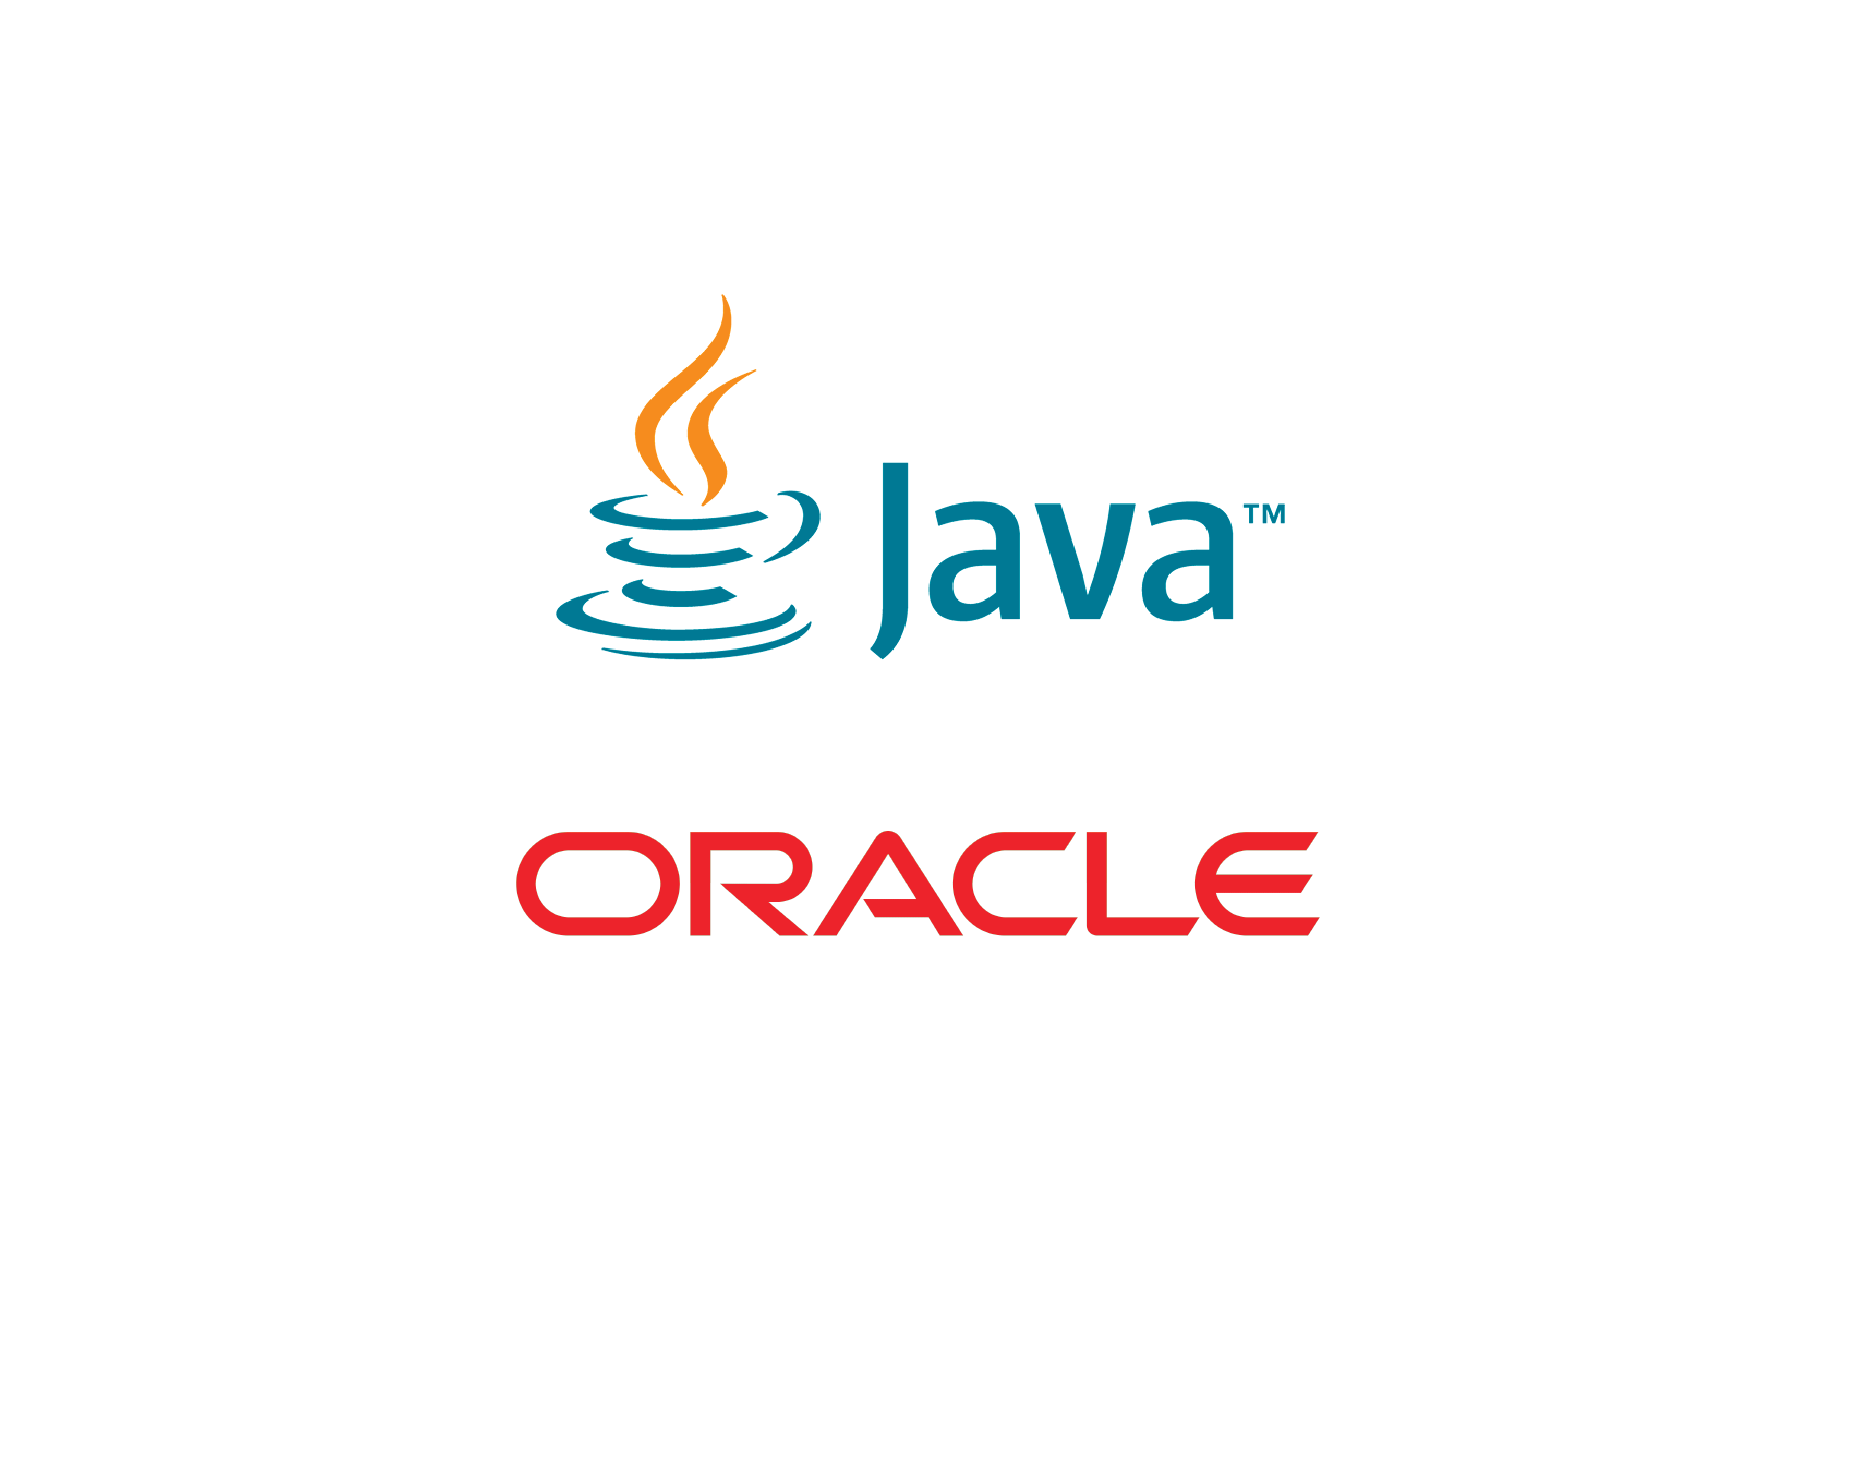 Oracle | Java